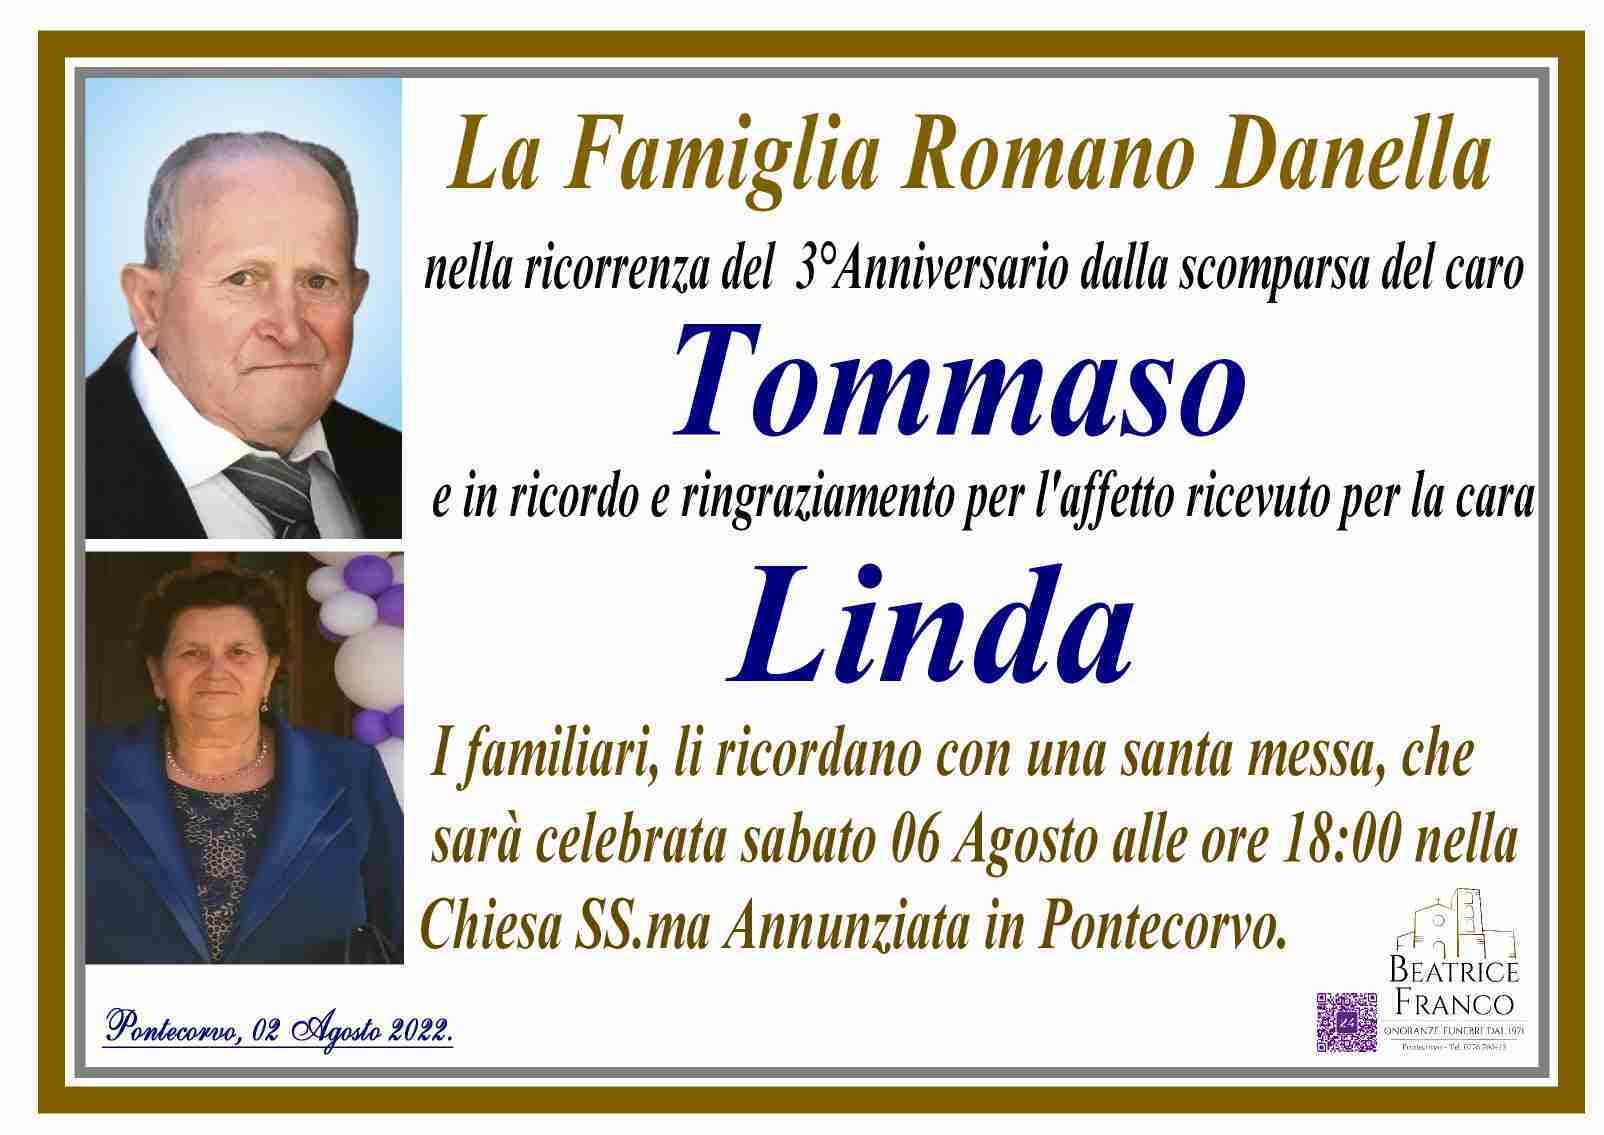 Tommaso Romano e Linda Danella